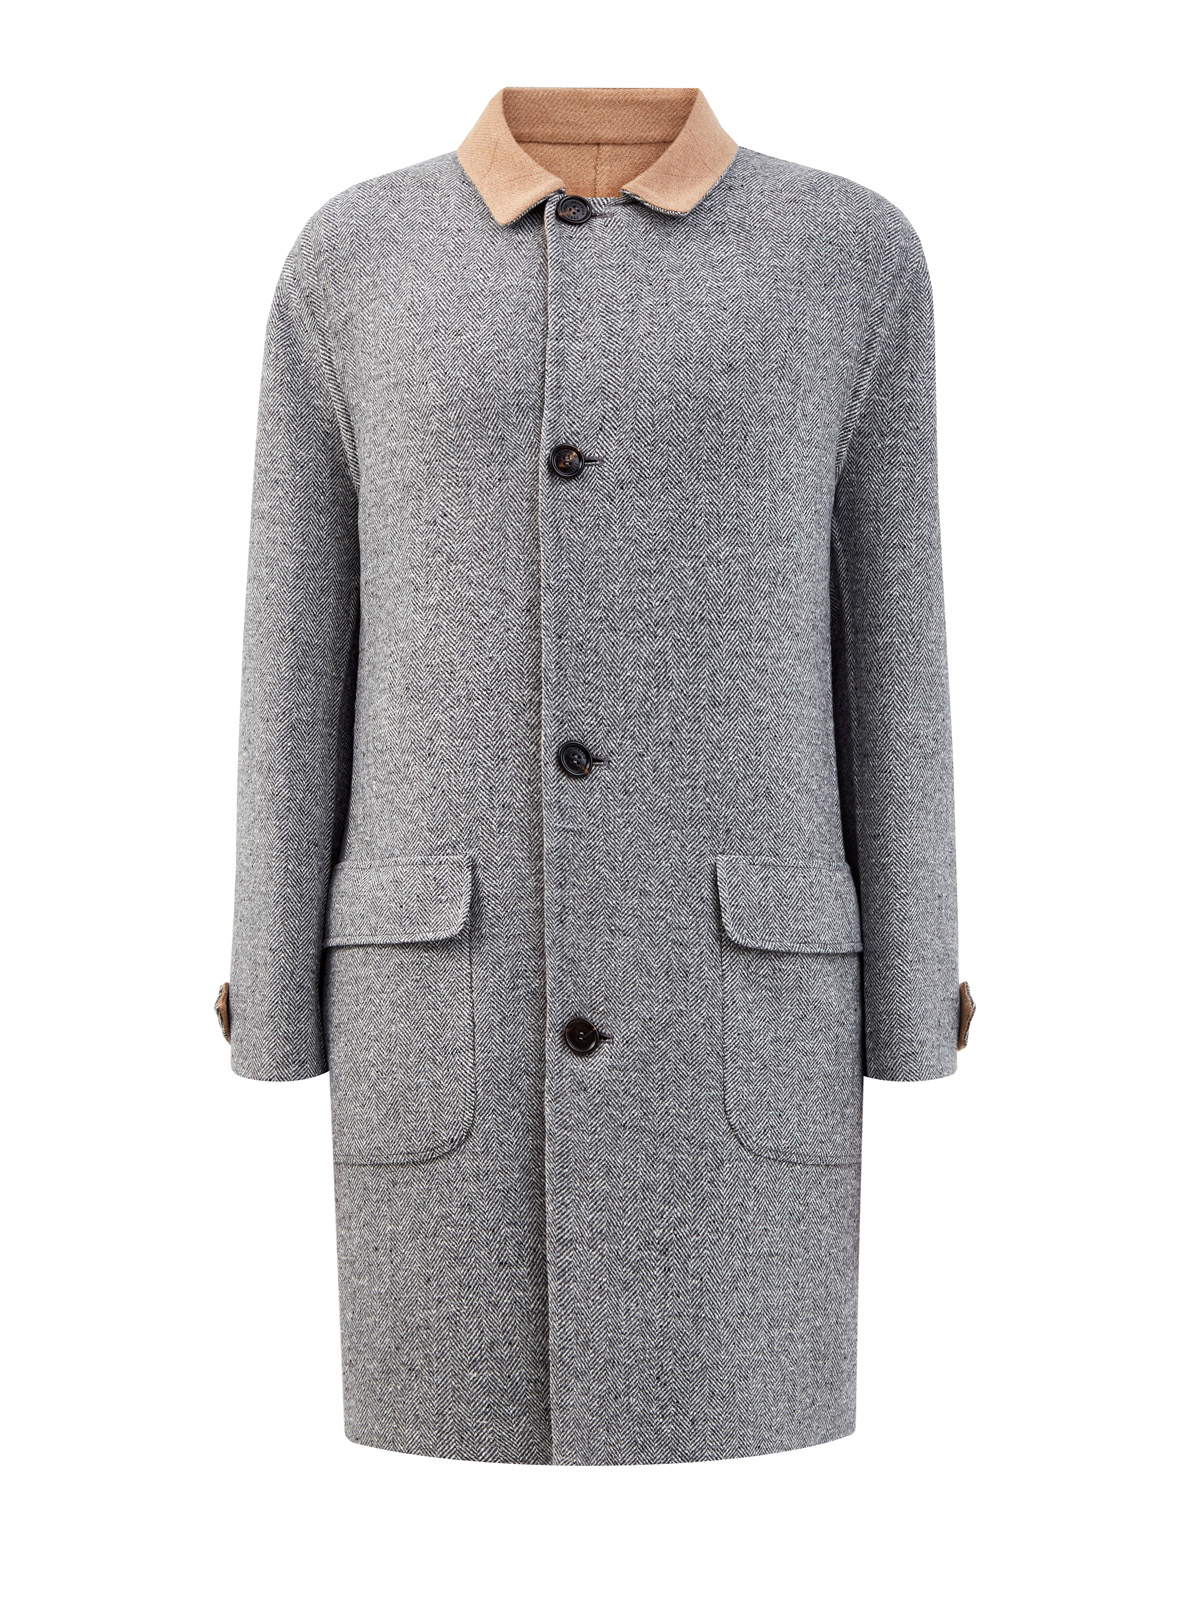 Двустороннее пальто-редингот из шерсти и кашемира BRUNELLO CUCINELLI, цвет мульти, размер 50;54